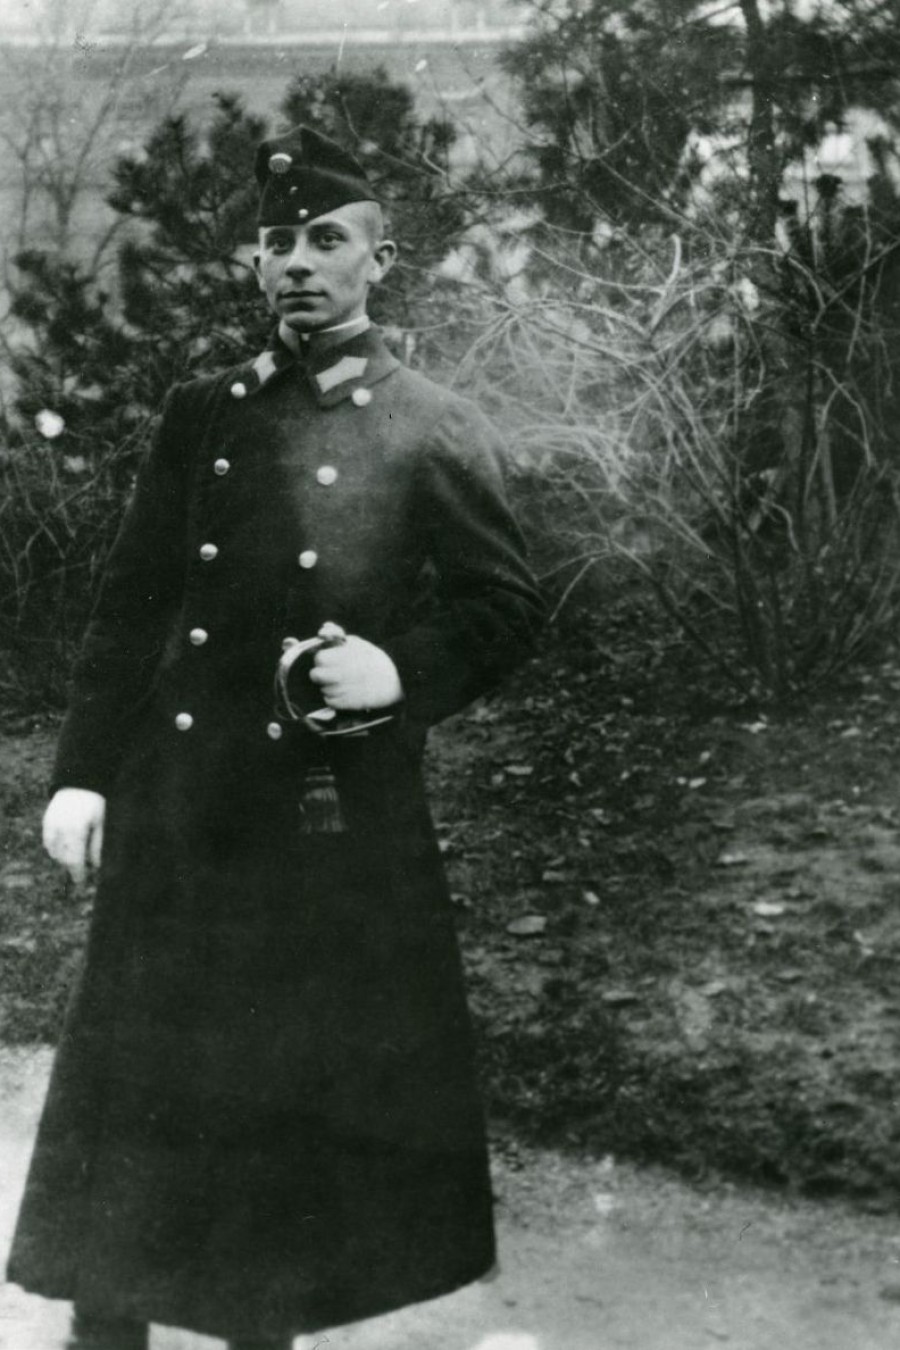 Der junge Stroheim in Uniform, um 1900